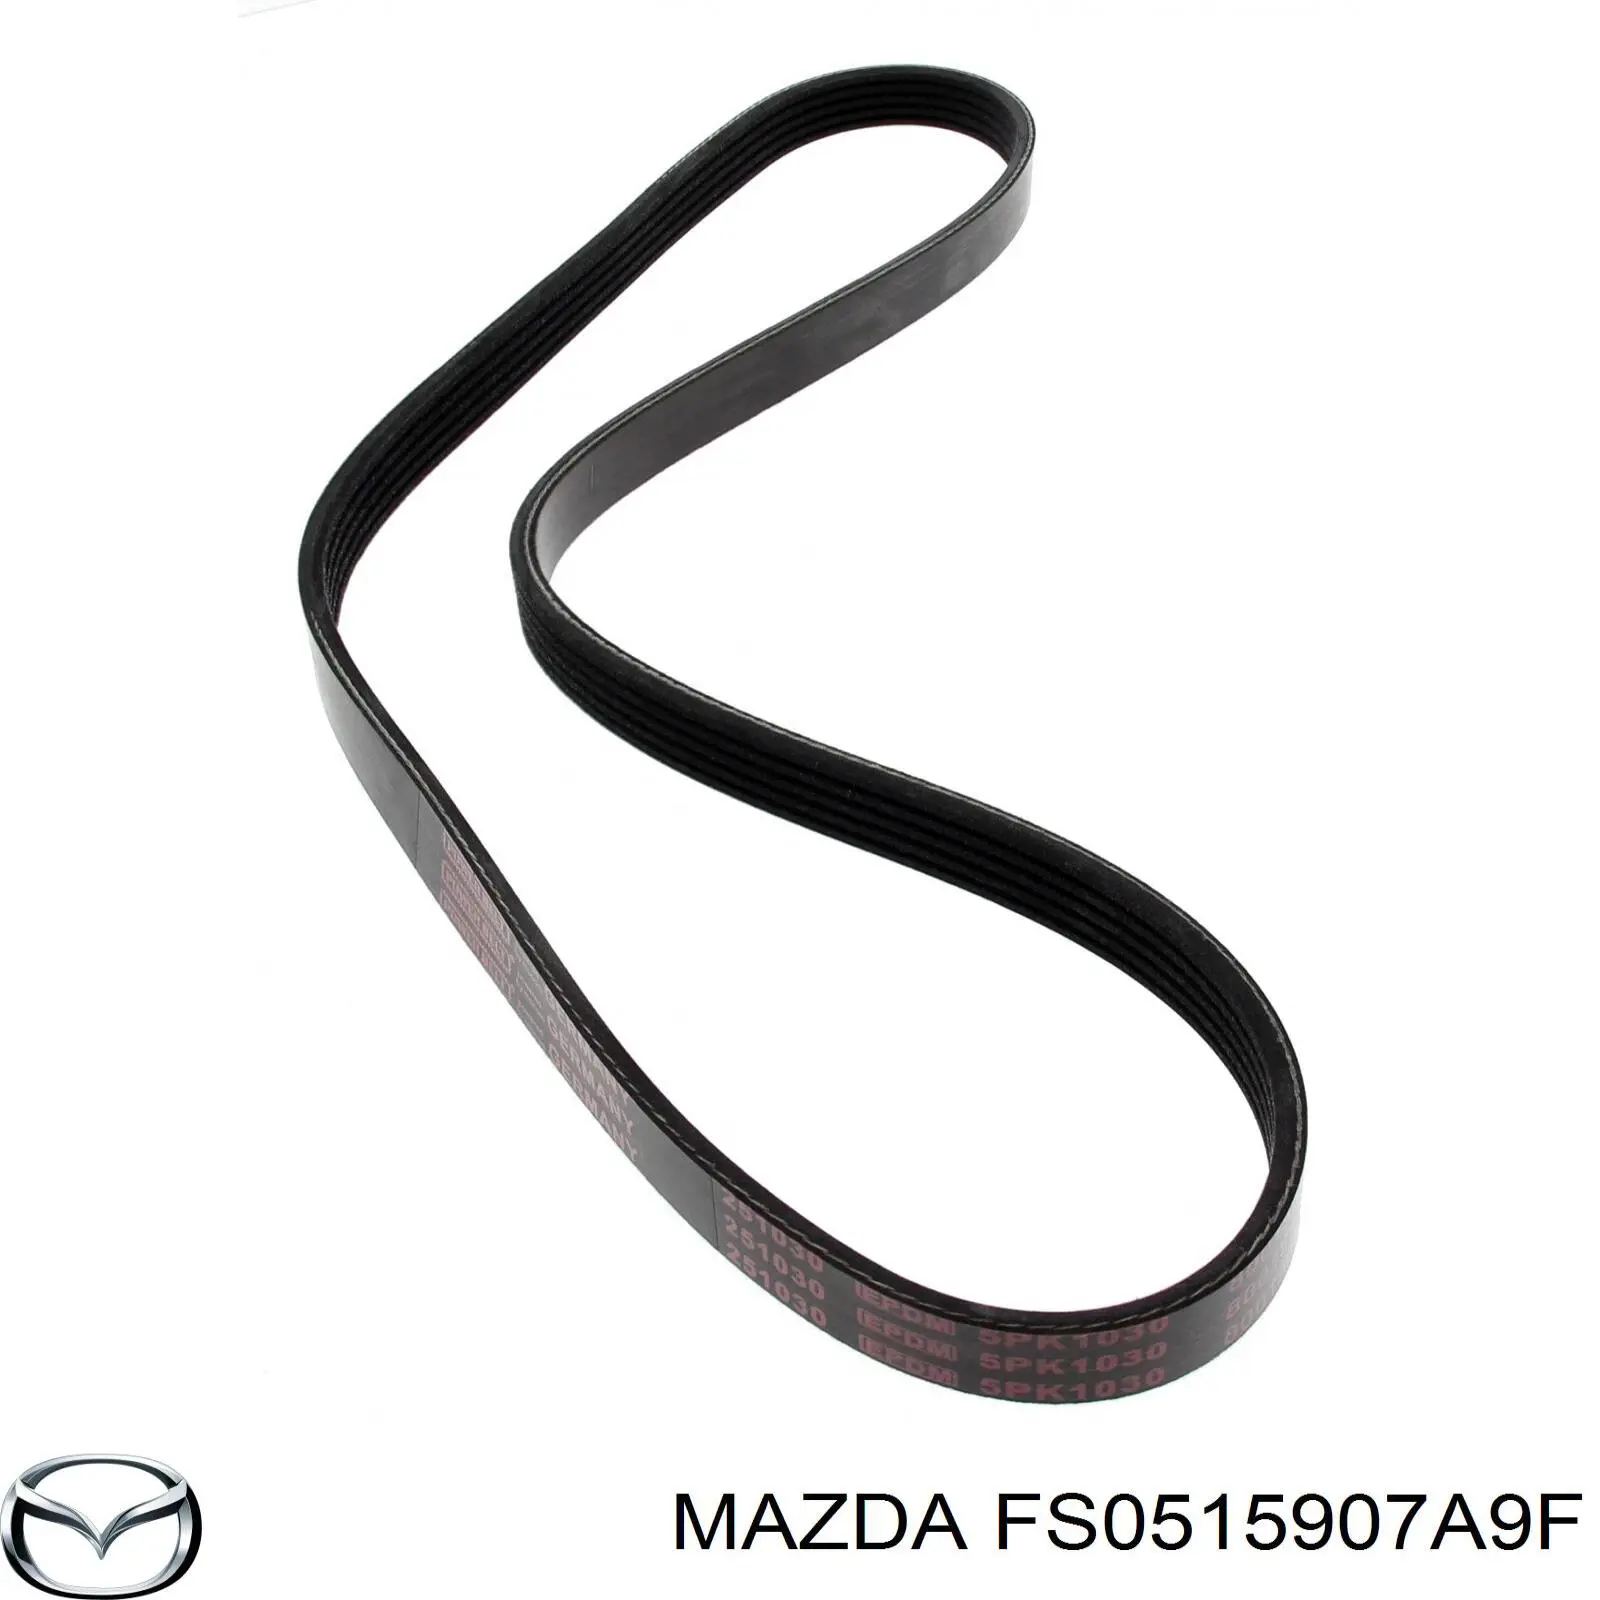 FS0515907A9F Mazda correa trapezoidal